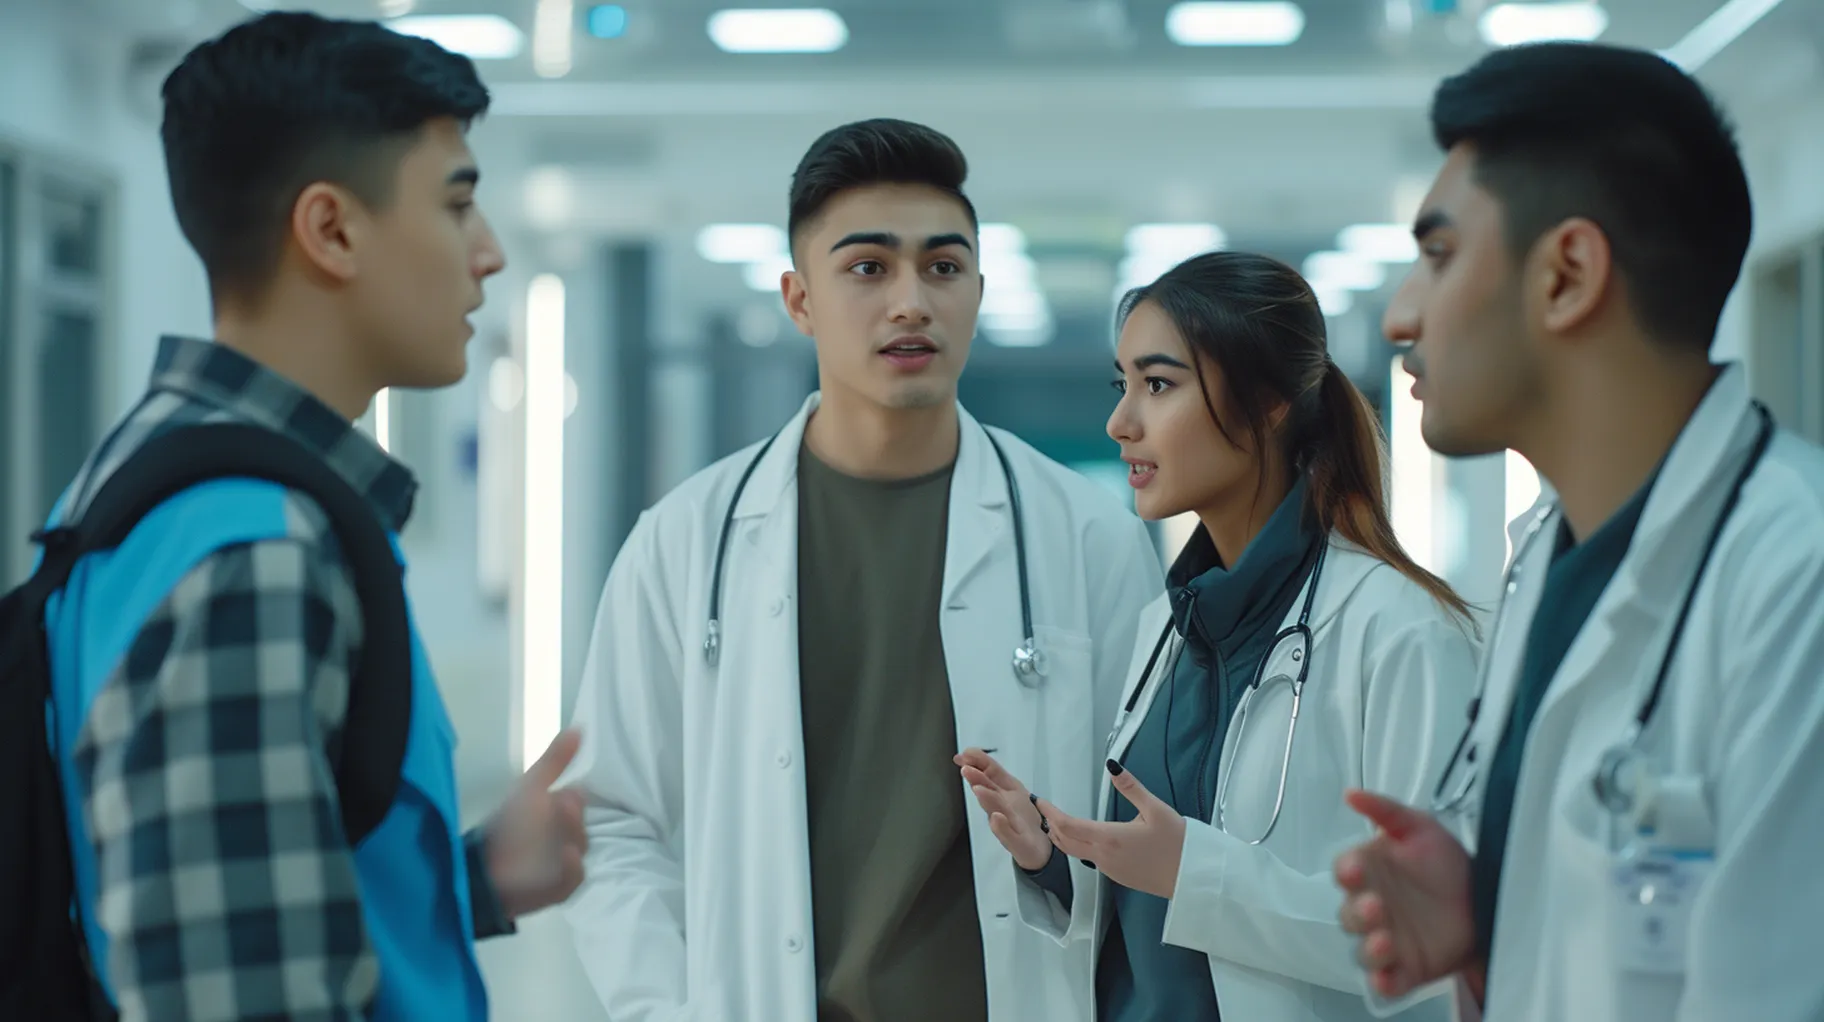 Four young uzbek doctors